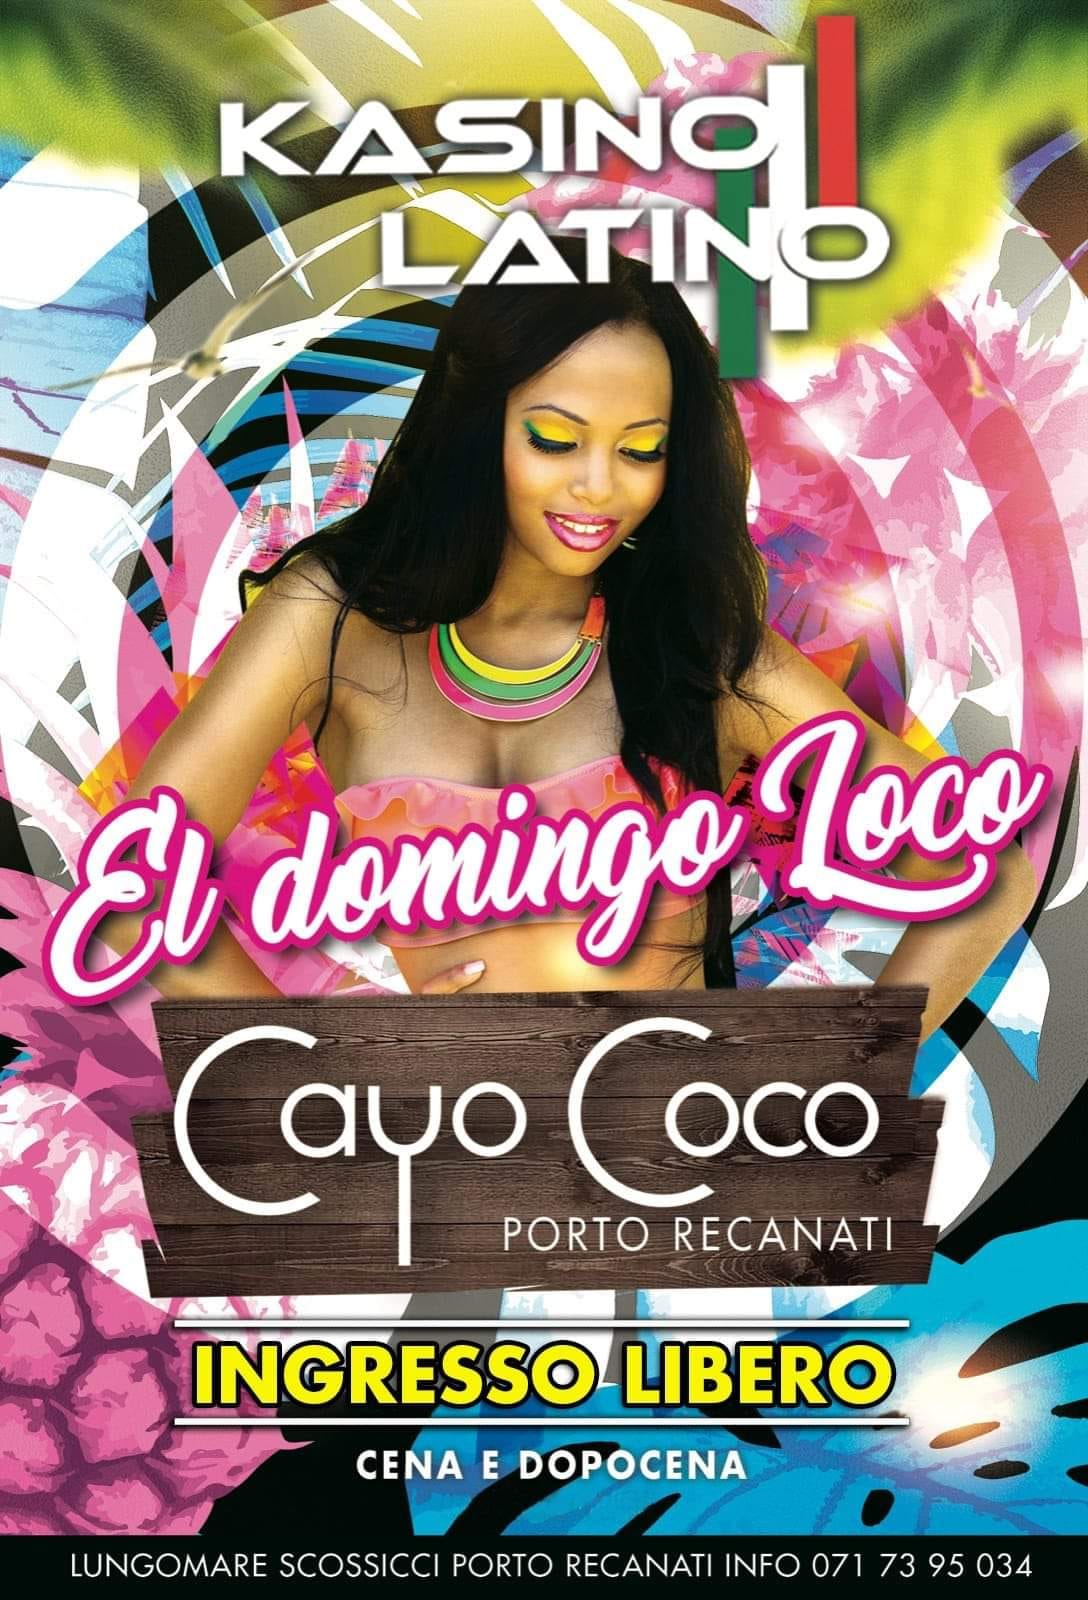 Cayo Coco Porto Recanati Domenica Latina